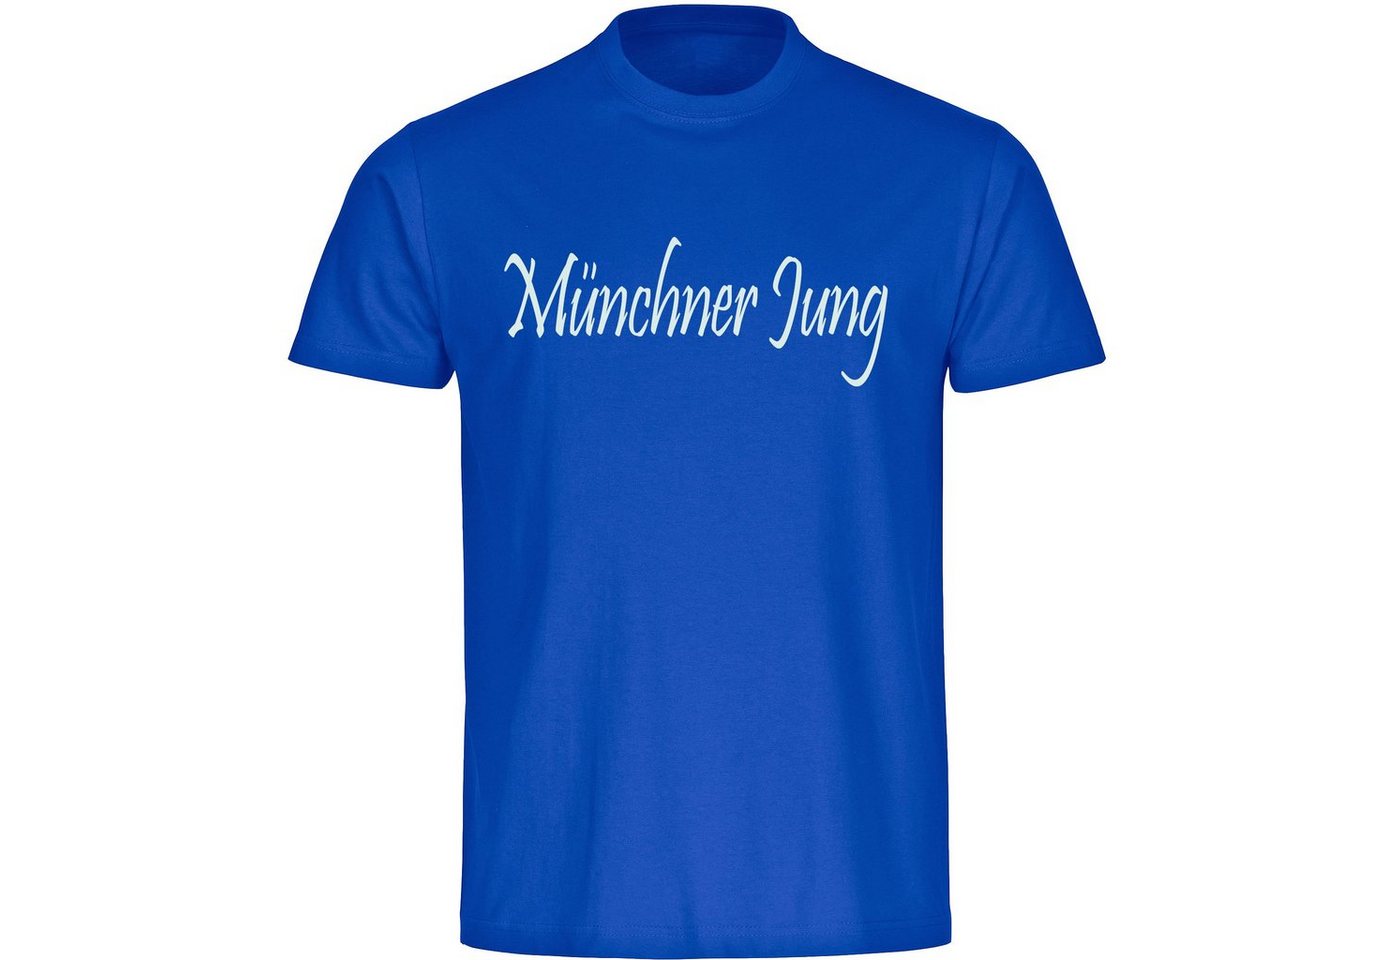 multifanshop T-Shirt Herren München blau - Münchner Jung - Männer von multifanshop